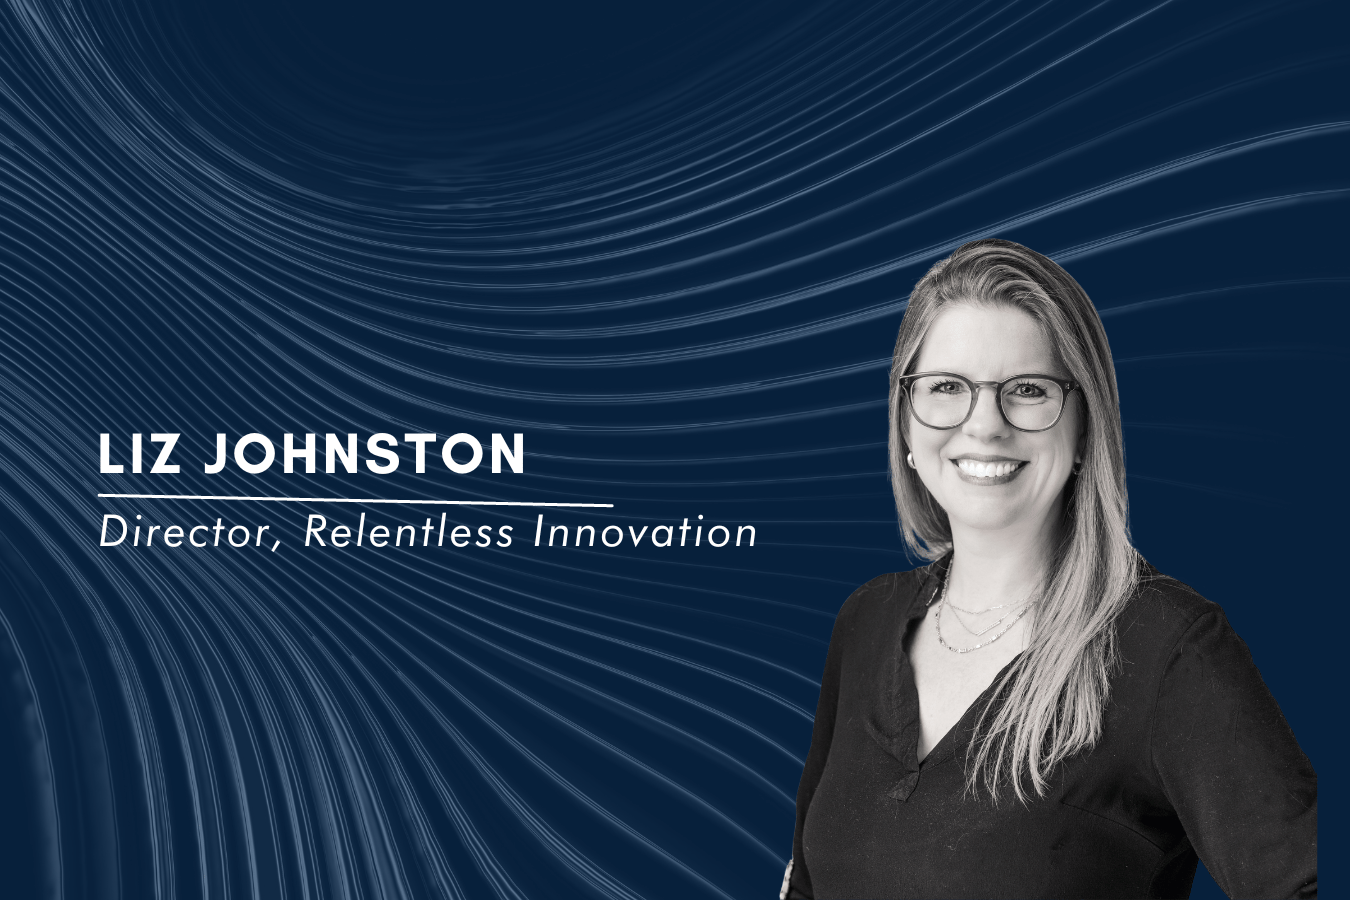 liz johnston joins valor team as director of relentless innovation